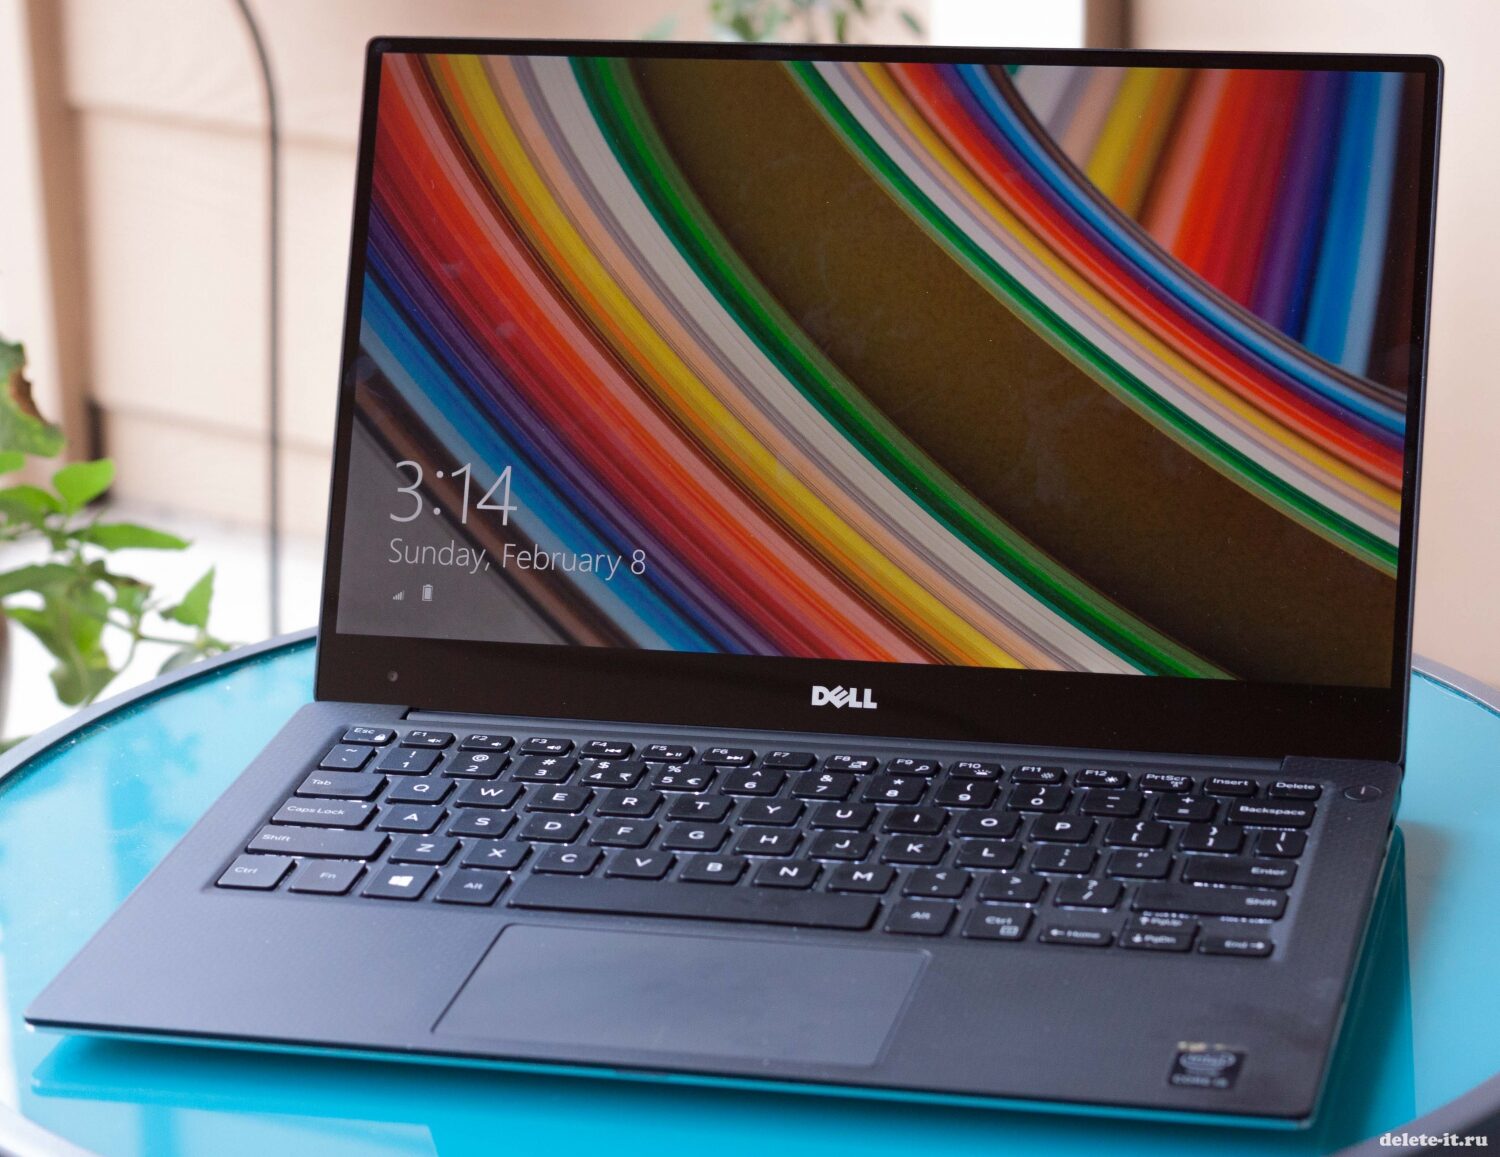 От компании Dell рынку представили новый ноутбук модели XPS 13 Developer Edition стоимостью от 950$